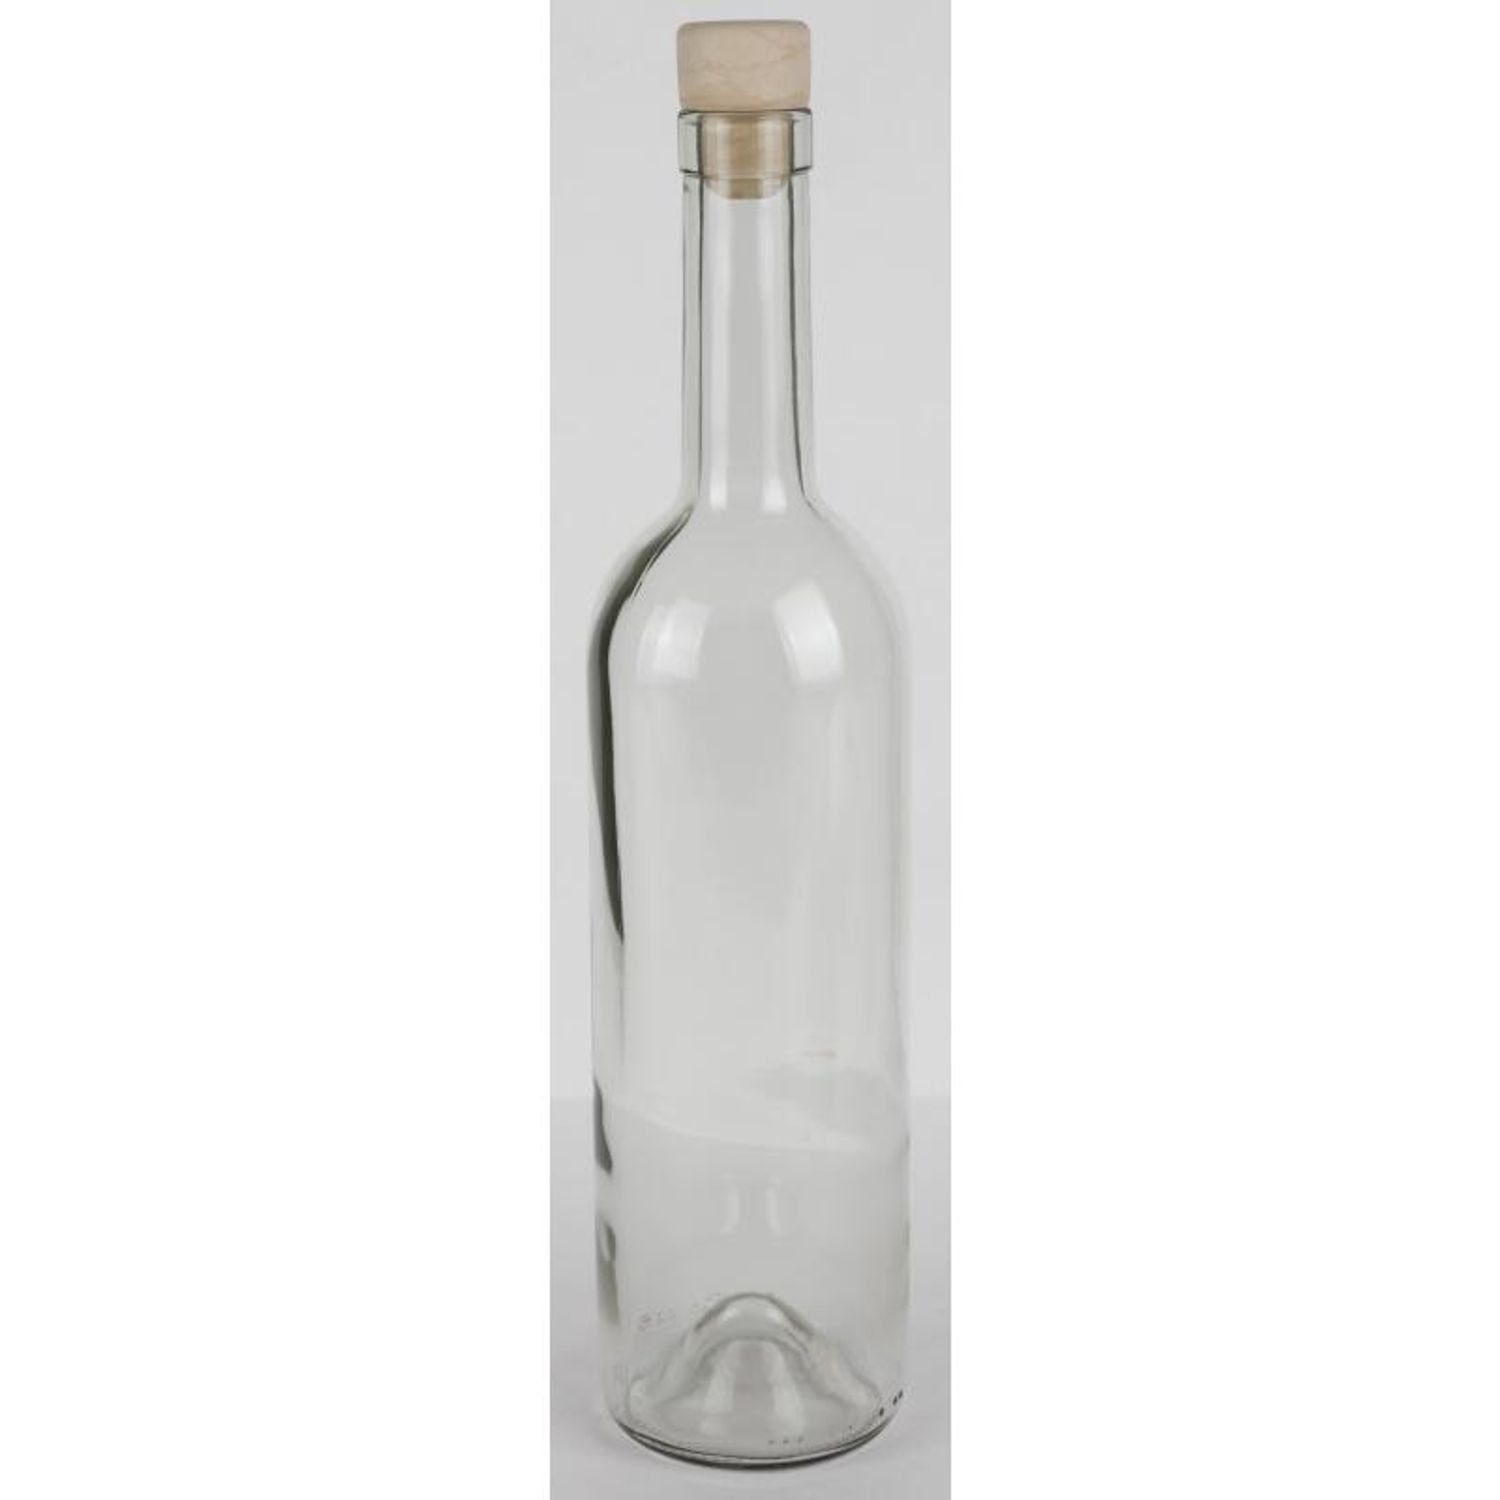 Omega Spolka Jawna Trinkflasche Korkenverschluss Wasser 0,75L 15x Trinken Küc Saft Glasflasche Etikett